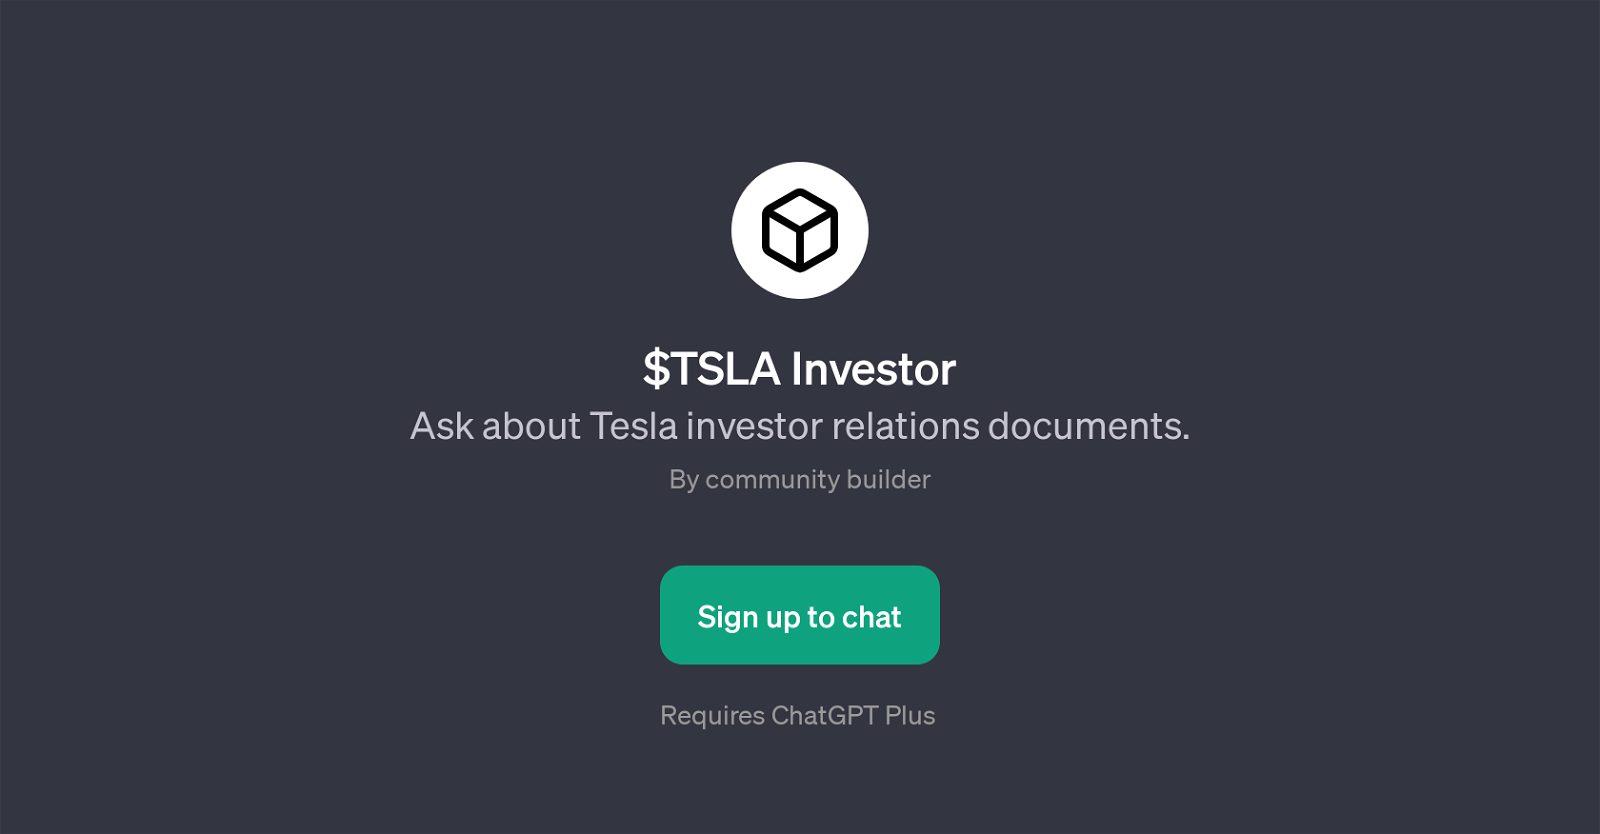 $TSLA Investor website